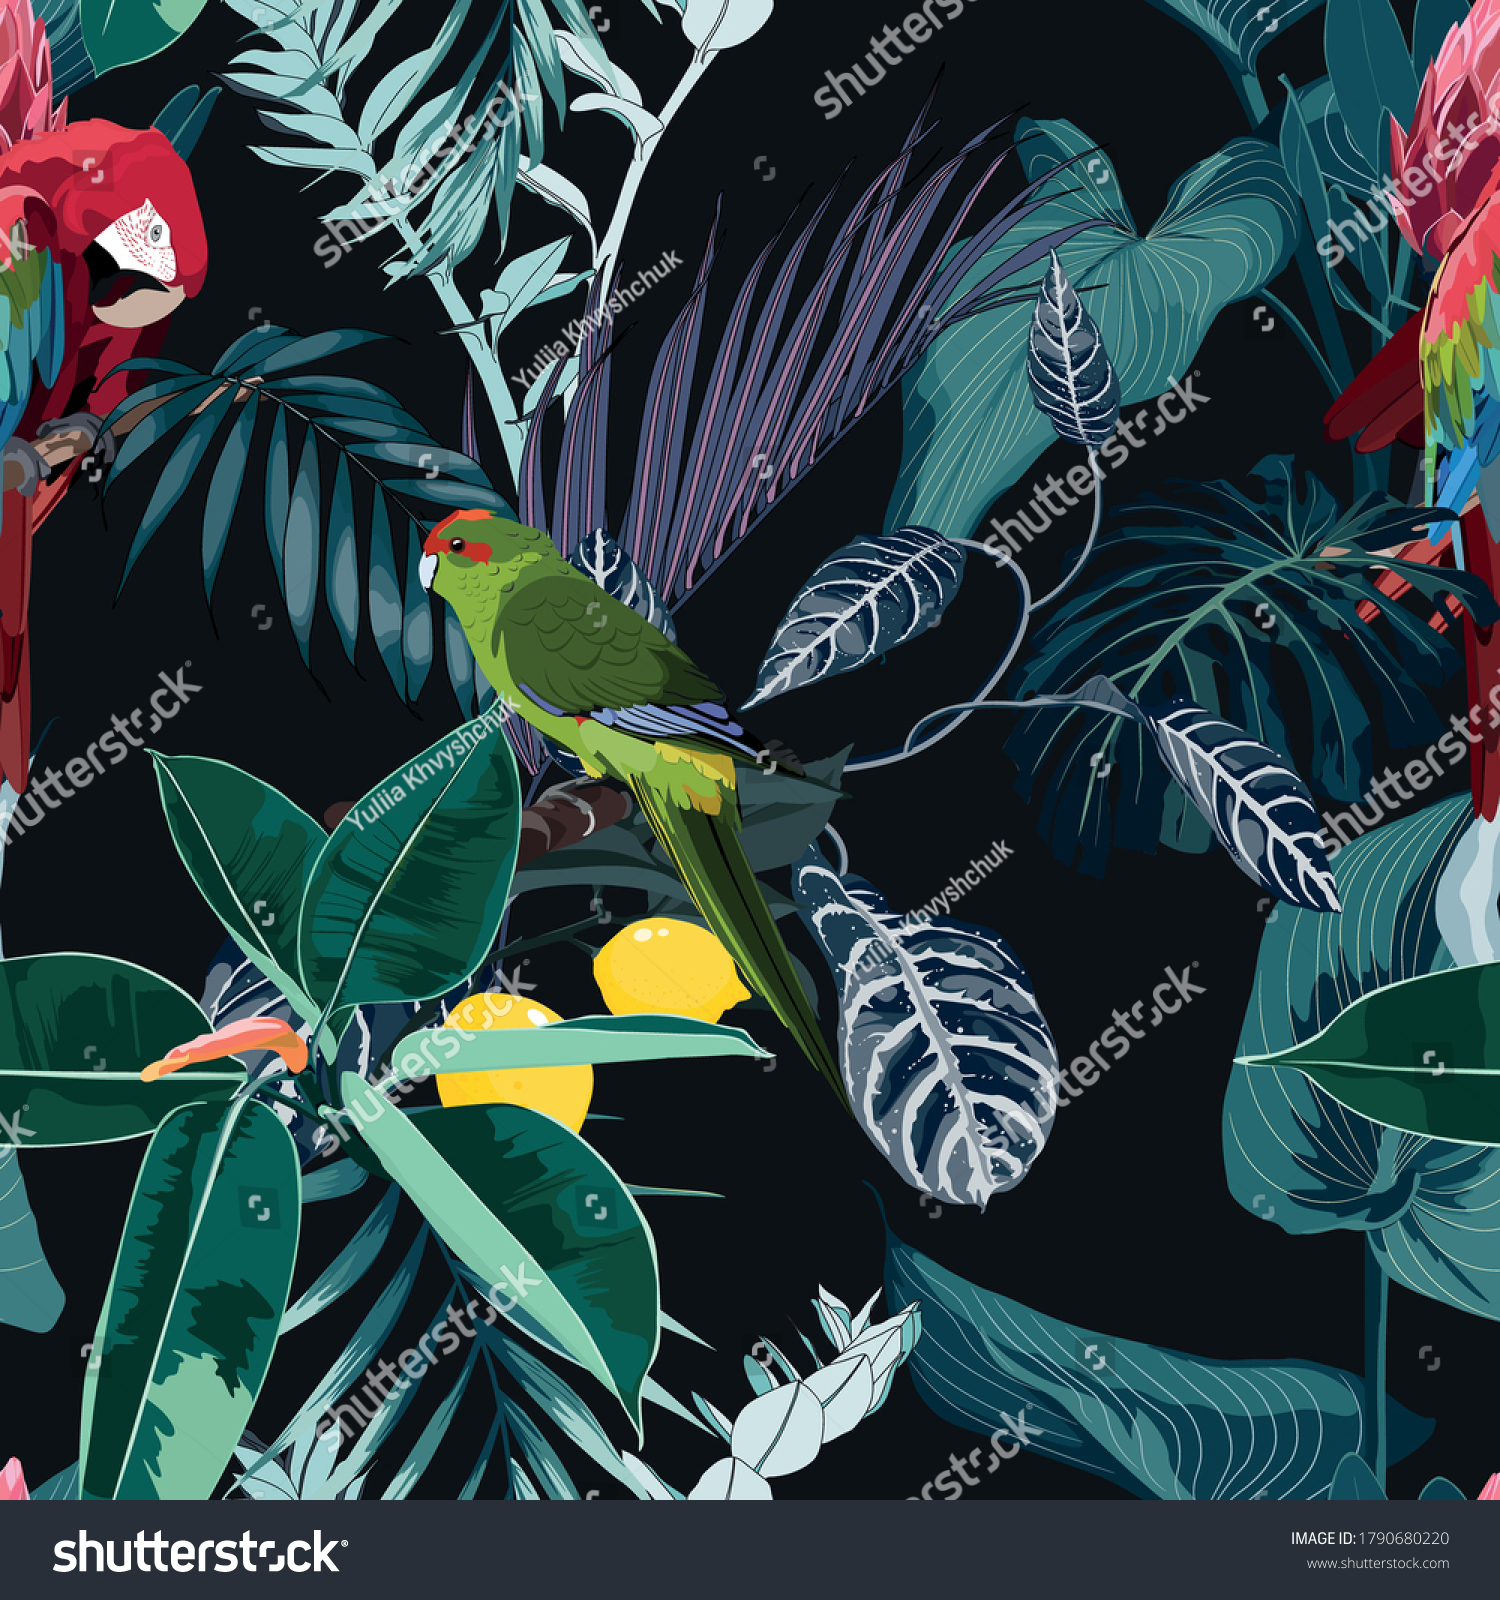 熱帯の夜のビンテージ野鳥やオウムの柄 ヤシの木 ヤシの葉 植物のシームレスな縁の黒い背景 エキゾチックなジャングルの壁紙 のベクター画像素材 ロイヤリティフリー